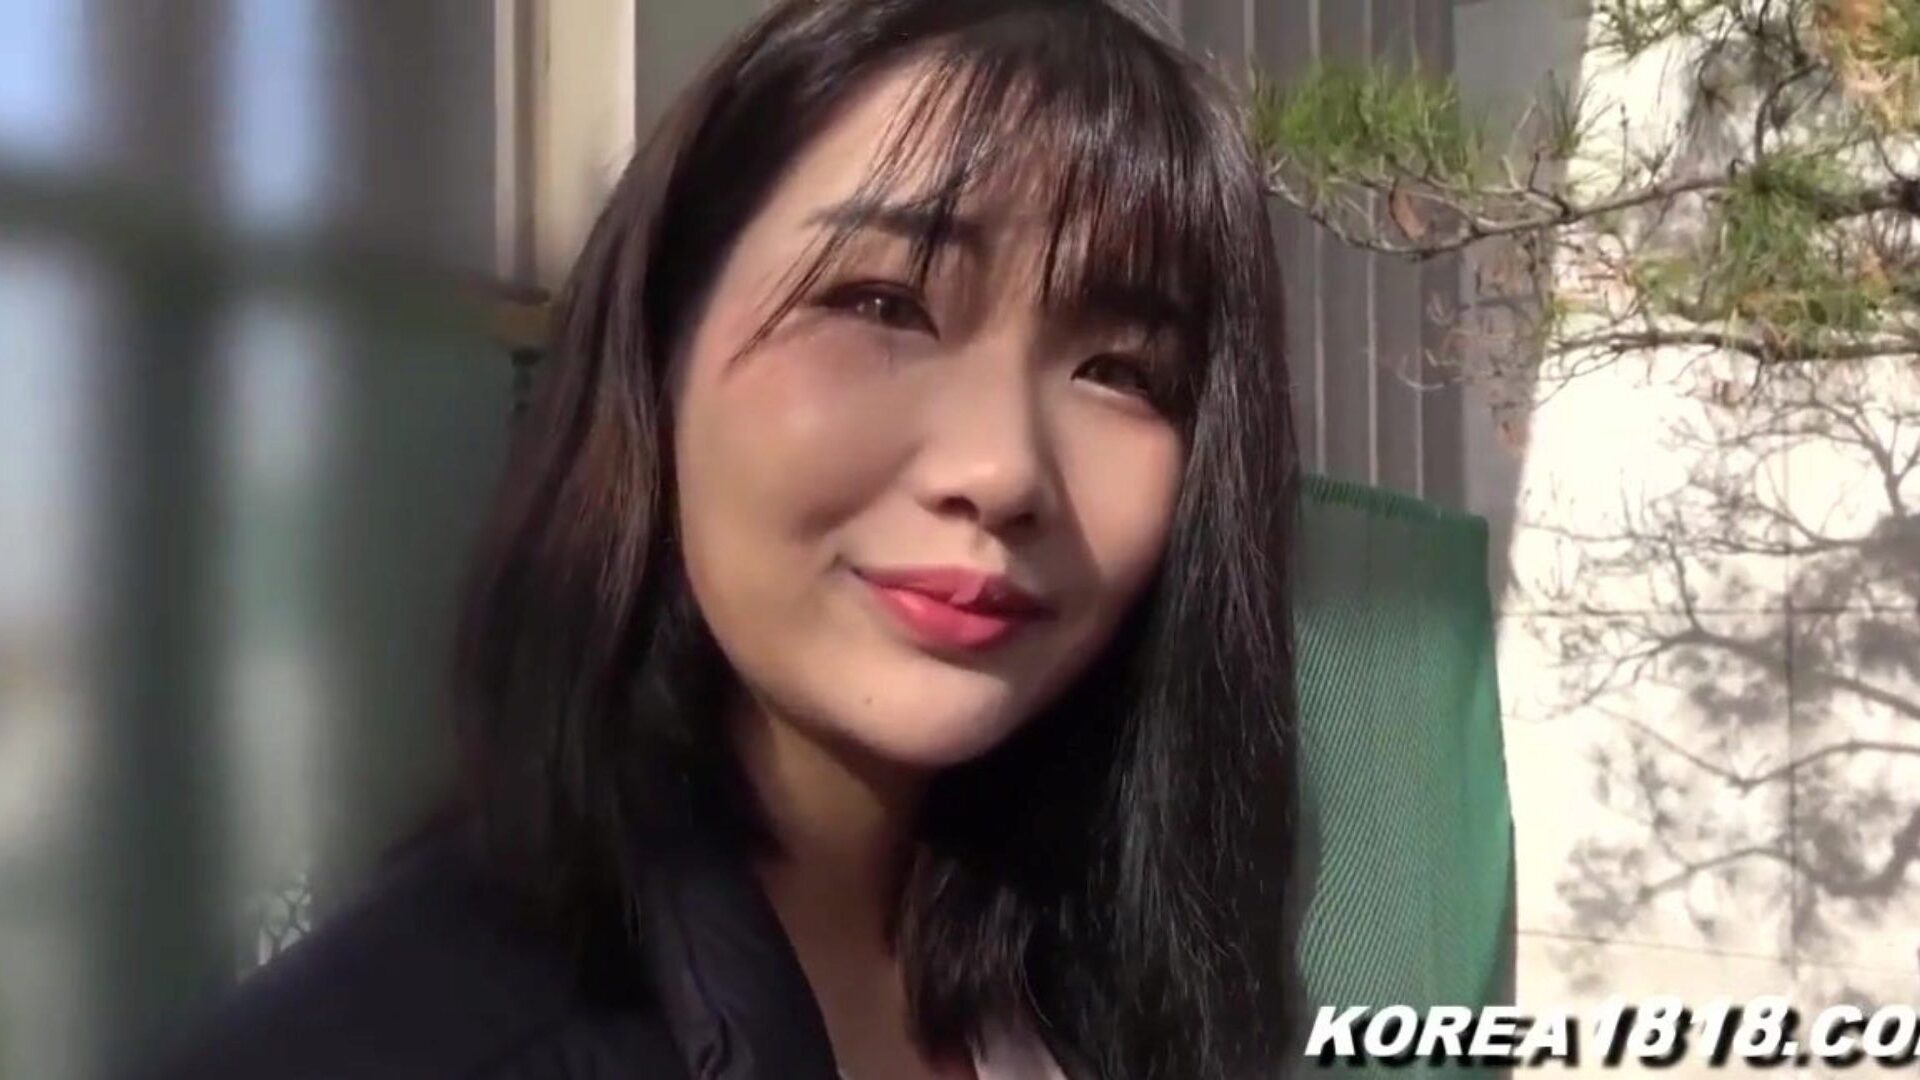 koreai pornó szuper forró koreai kurva megrázkódik